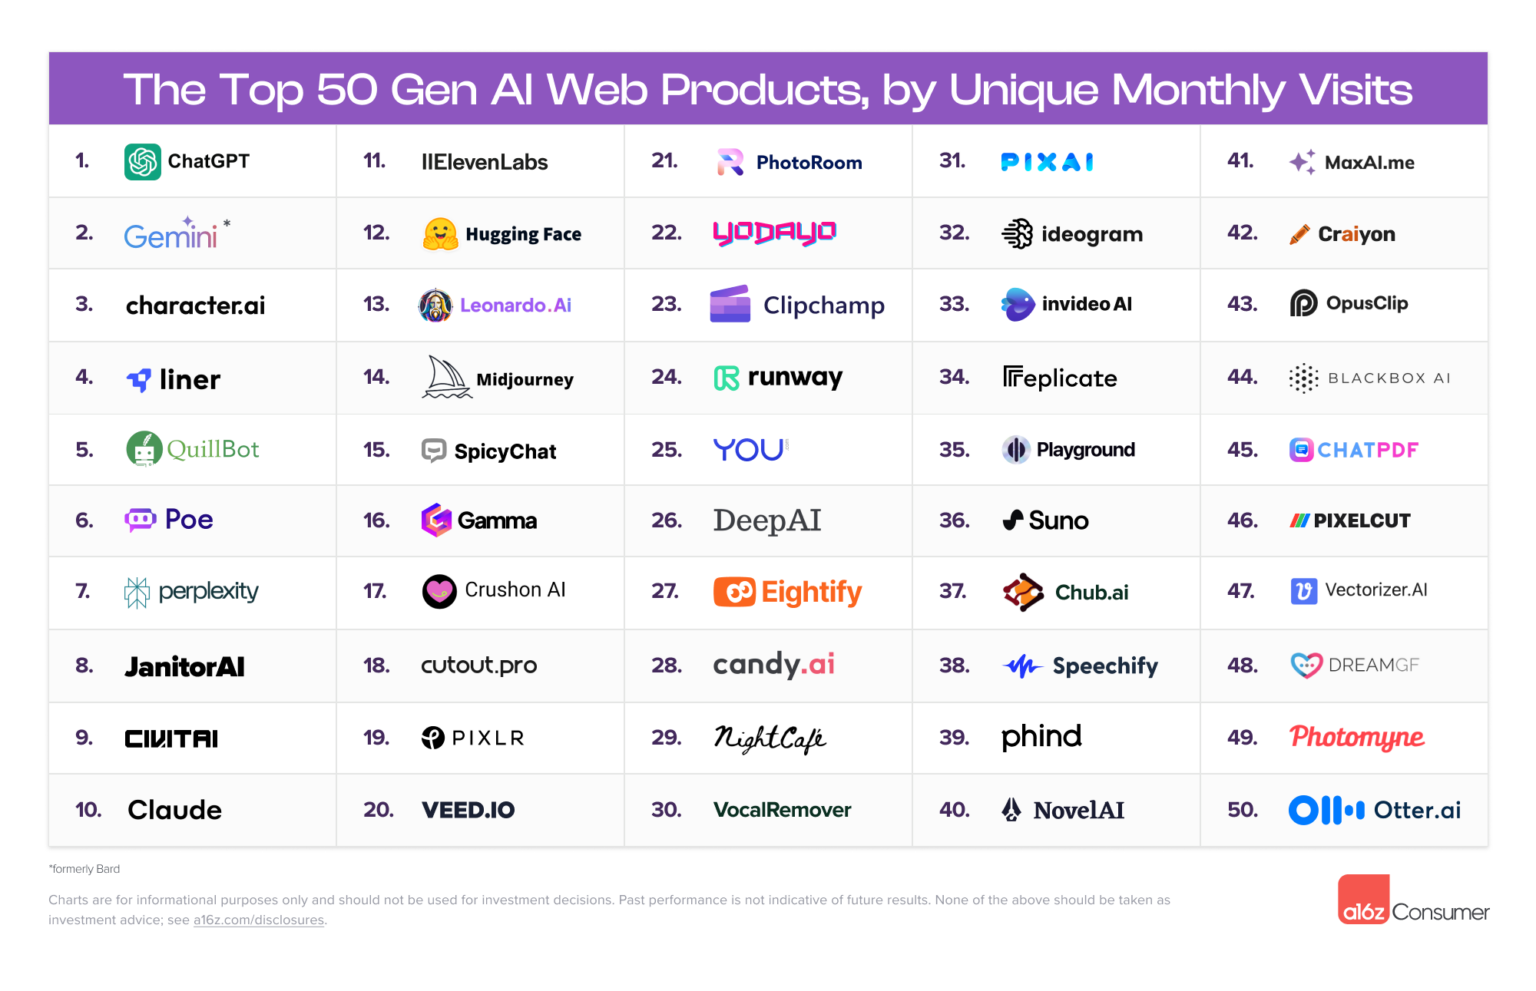 월간 방문 수 기준 상위 50개의 Gen AI 웹 프로덕트